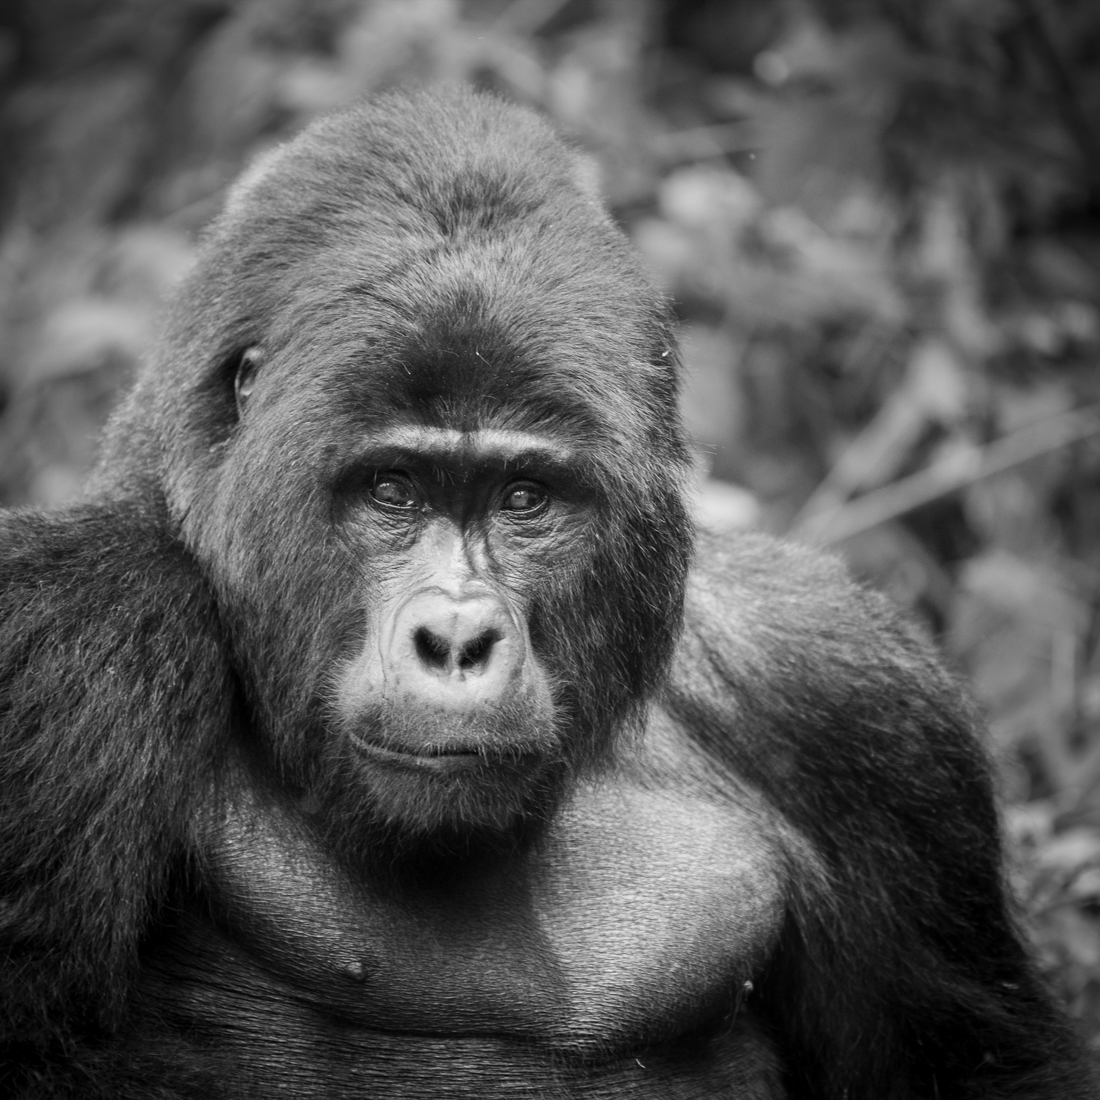 gorilla - hominid